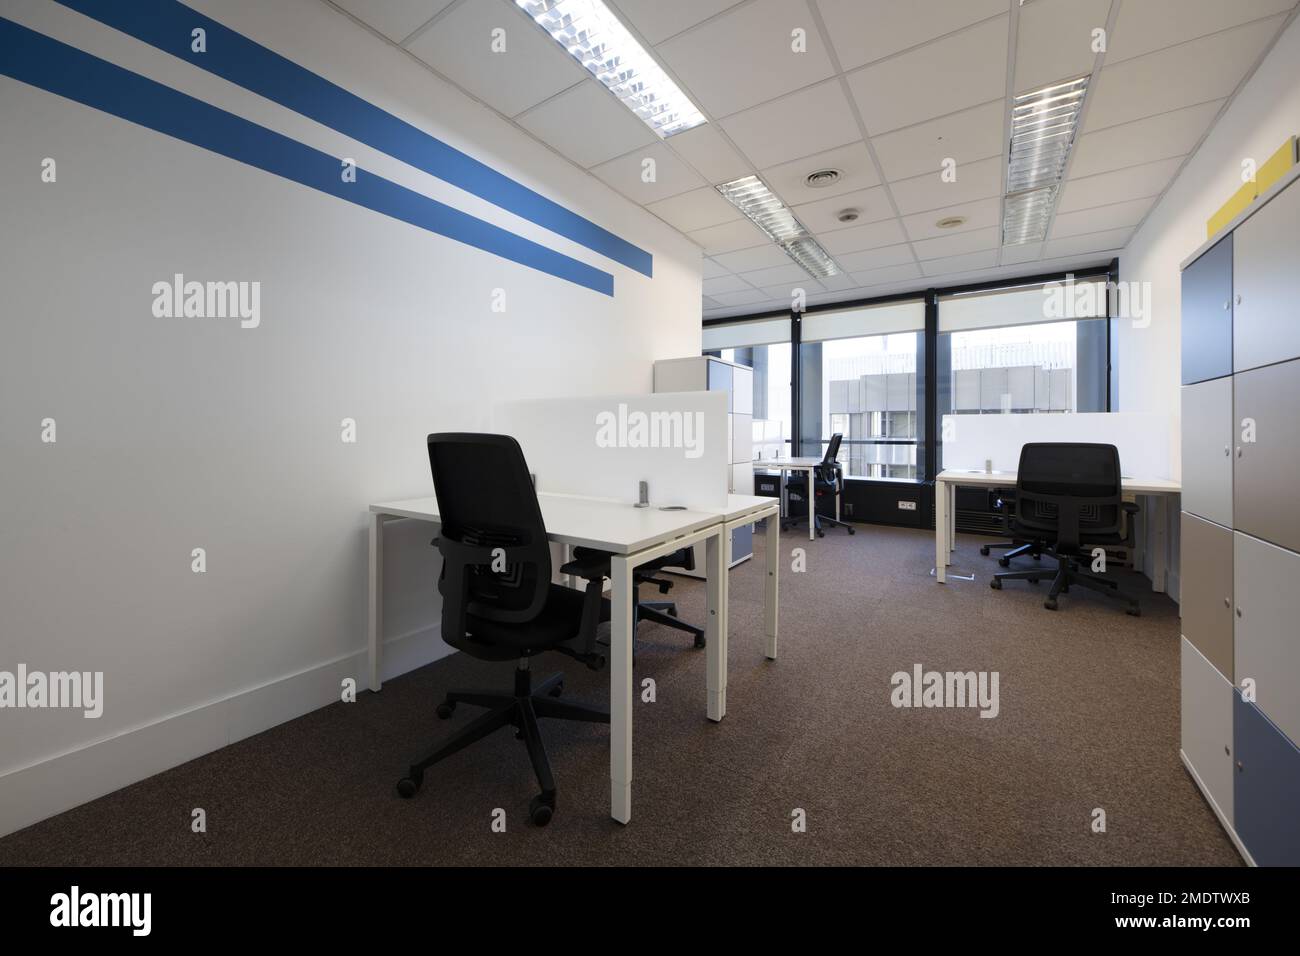 Ufficio con piccoli tavoli bianchi opposti con divisori, armadio di archiviazione con serrature e sedie girevoli nere Foto Stock